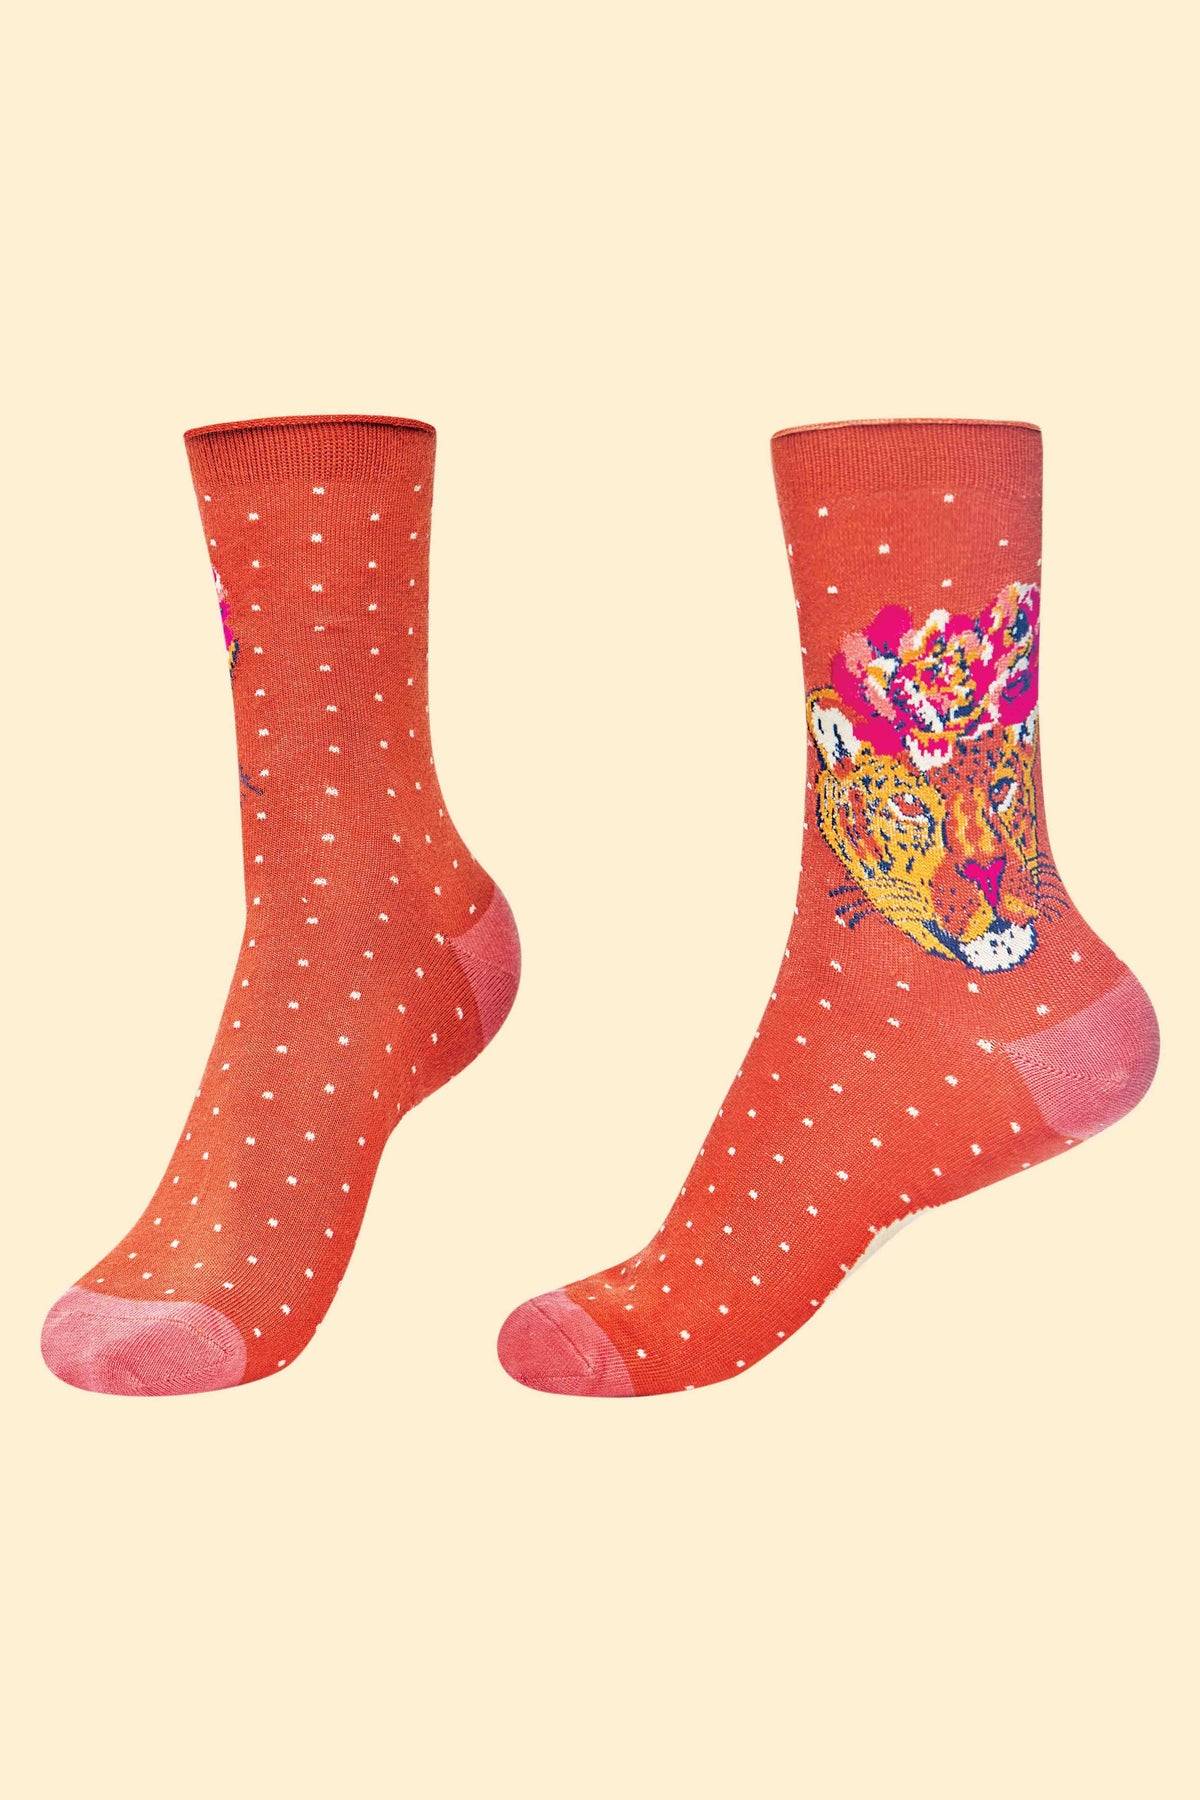 Sassy Leopard Ankle Socks - Terracotta